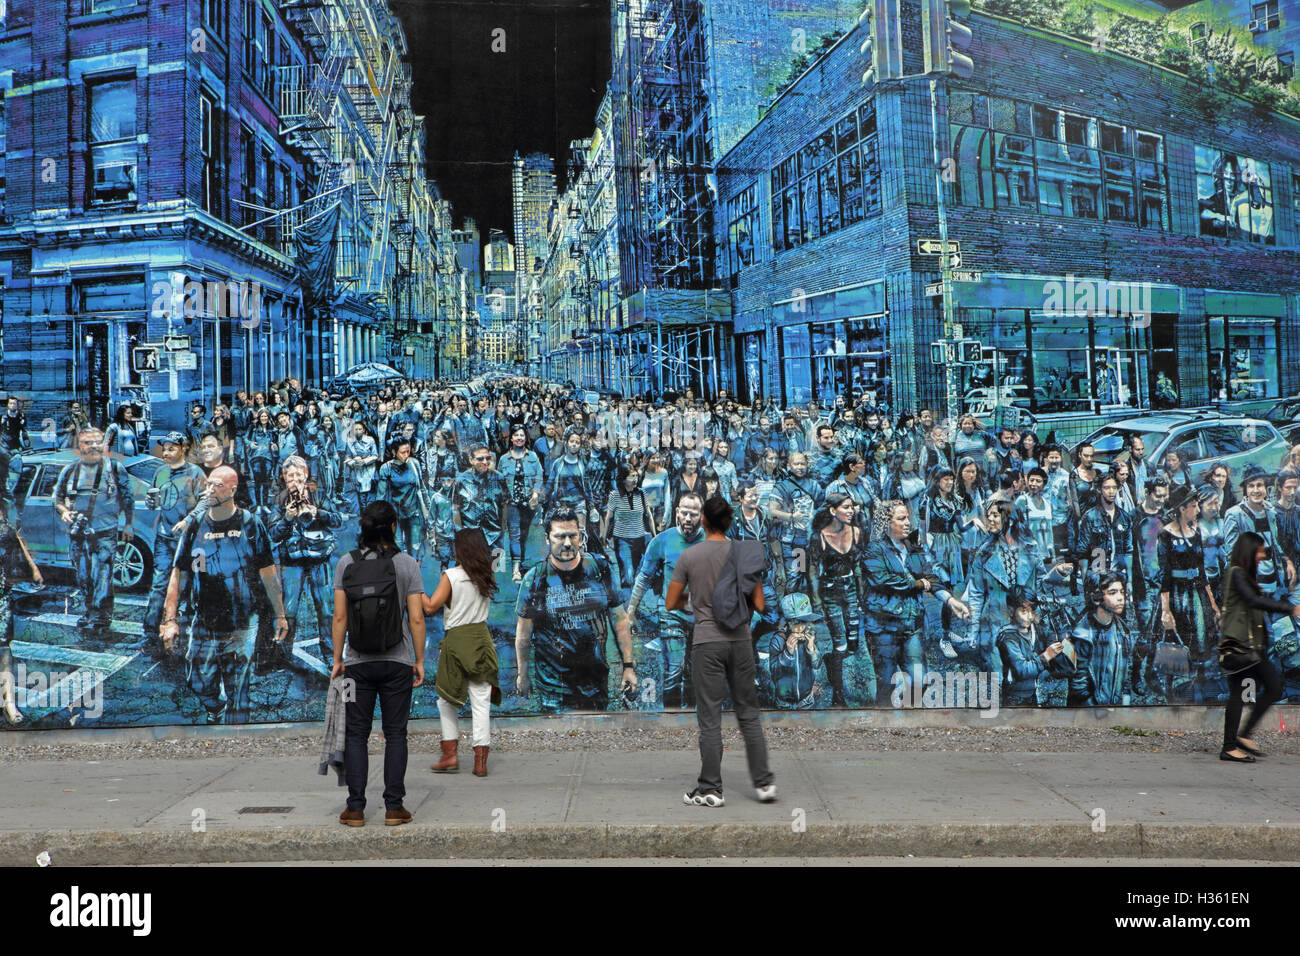 NYC pedoni a piedi passato un grande murale dipinto da Logan Hicks sulla Bowery parete murale, Houston Street Foto Stock